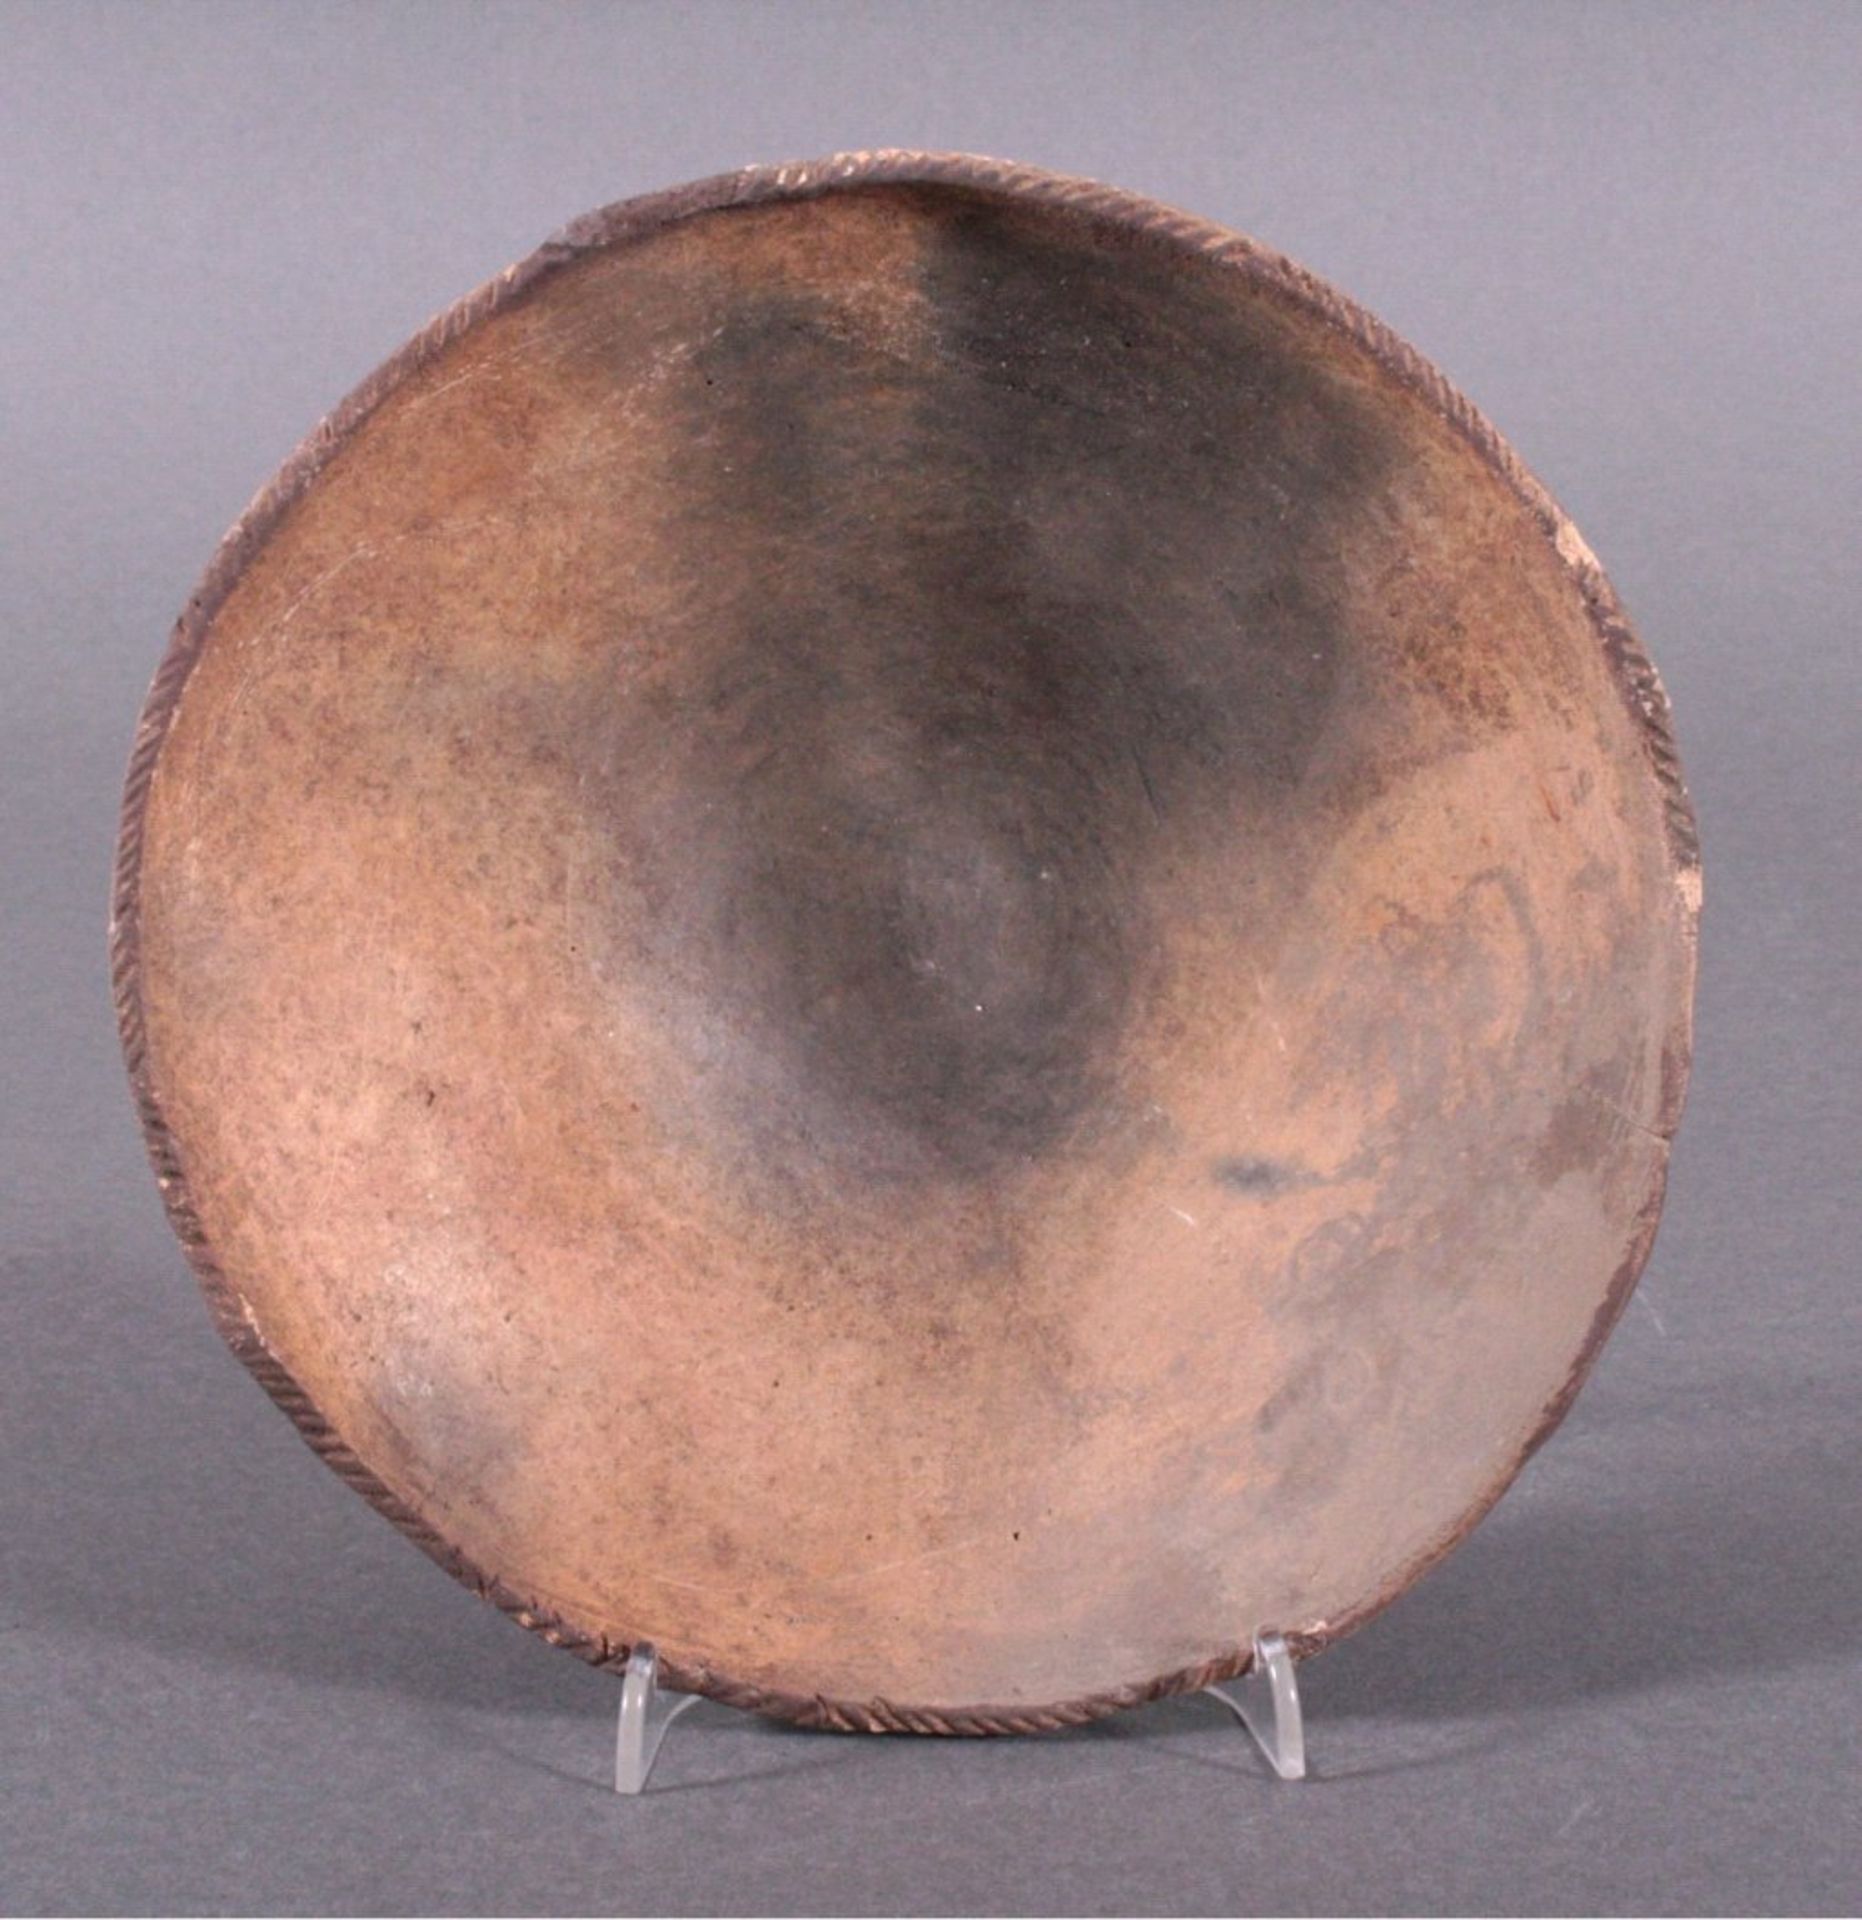 Runde Schale, Lausitzer Kultur - 900- 500 v. Chr.heller Ton, gezipfelter Rand, Rückseite - Bild 2 aus 3